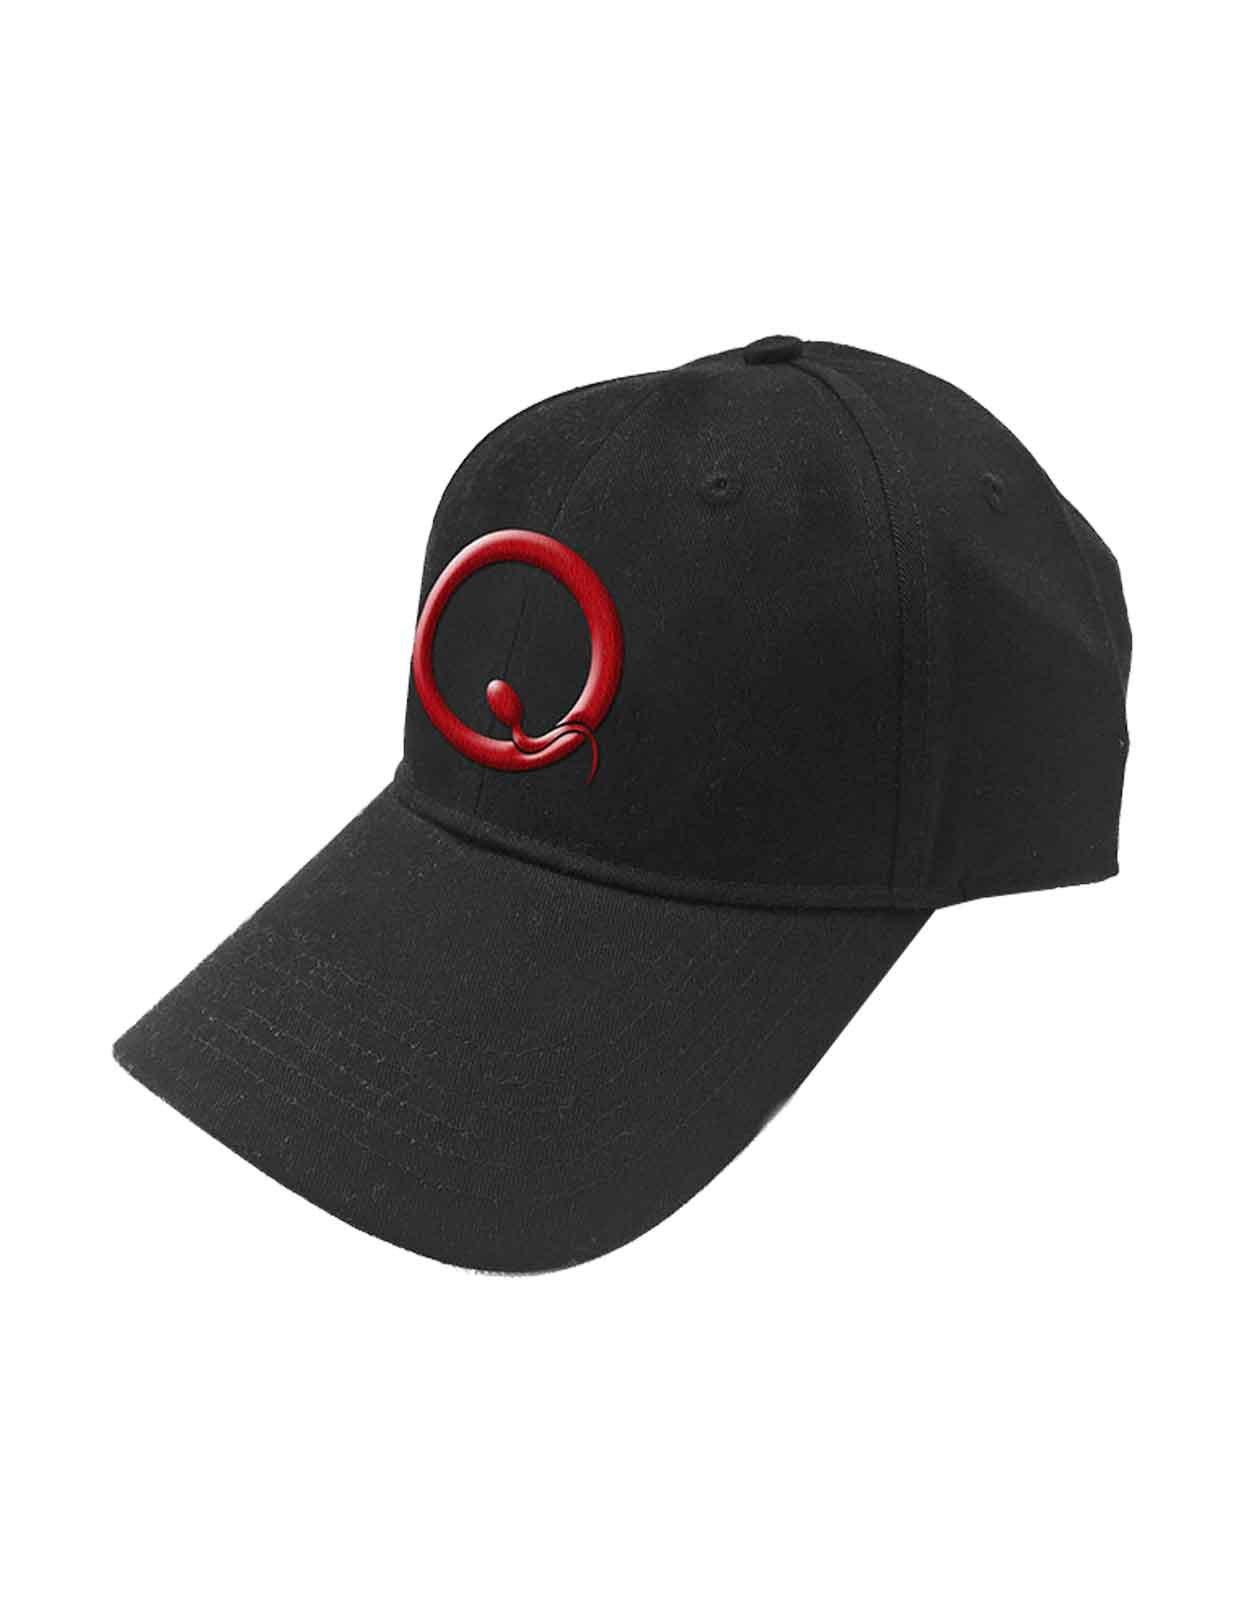 Бейсбольная кепка Snapback с логотипом Q Band Queen, черный бейсболка bubble черная с белым